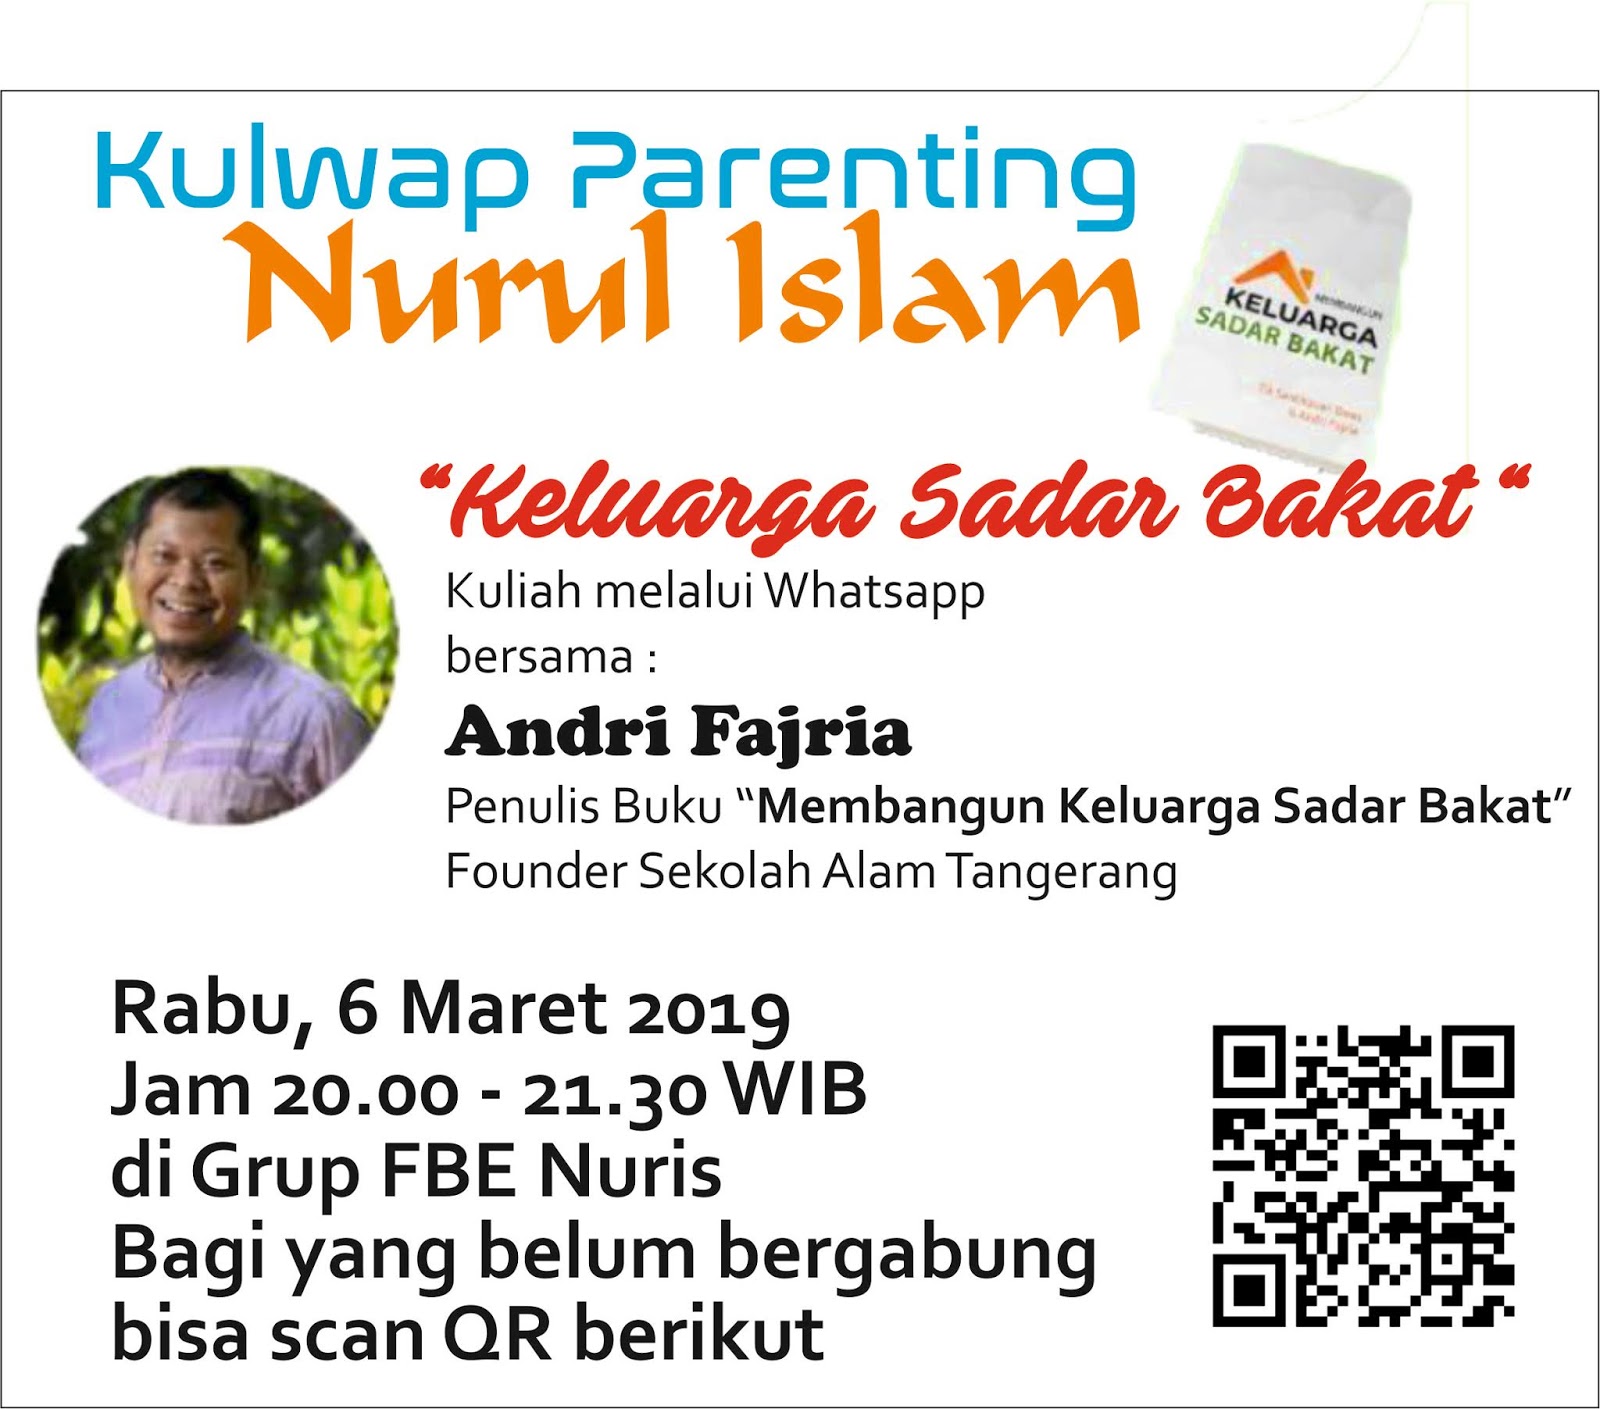 Resume Kuliah line Forum Parenting Nurul Islam "Keluarga Sadar Bakat"